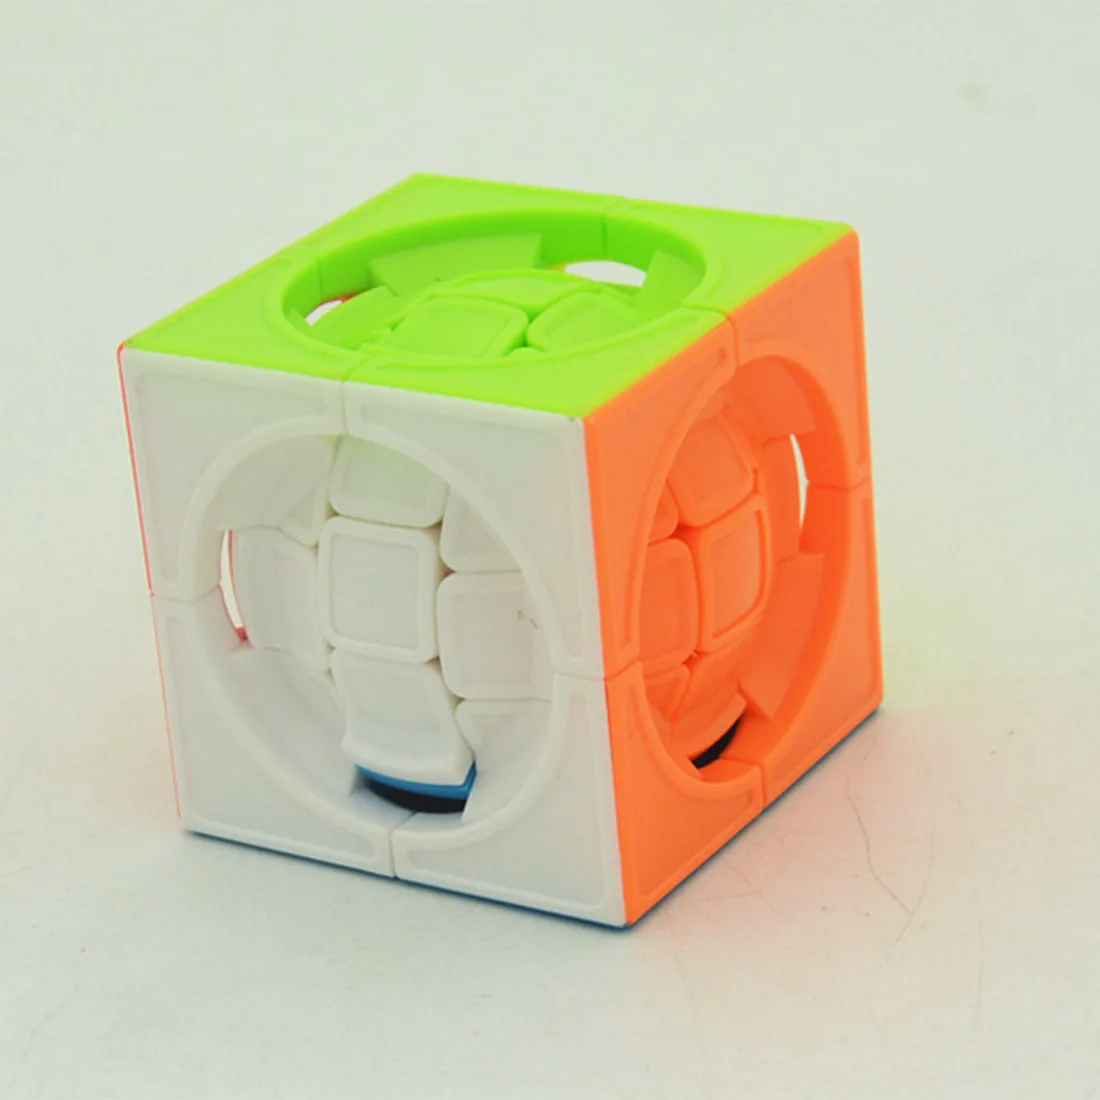 Surwish Tyle LF Mozhongqiu 3x3 милый волшебный куб головоломка игрушка-красочный